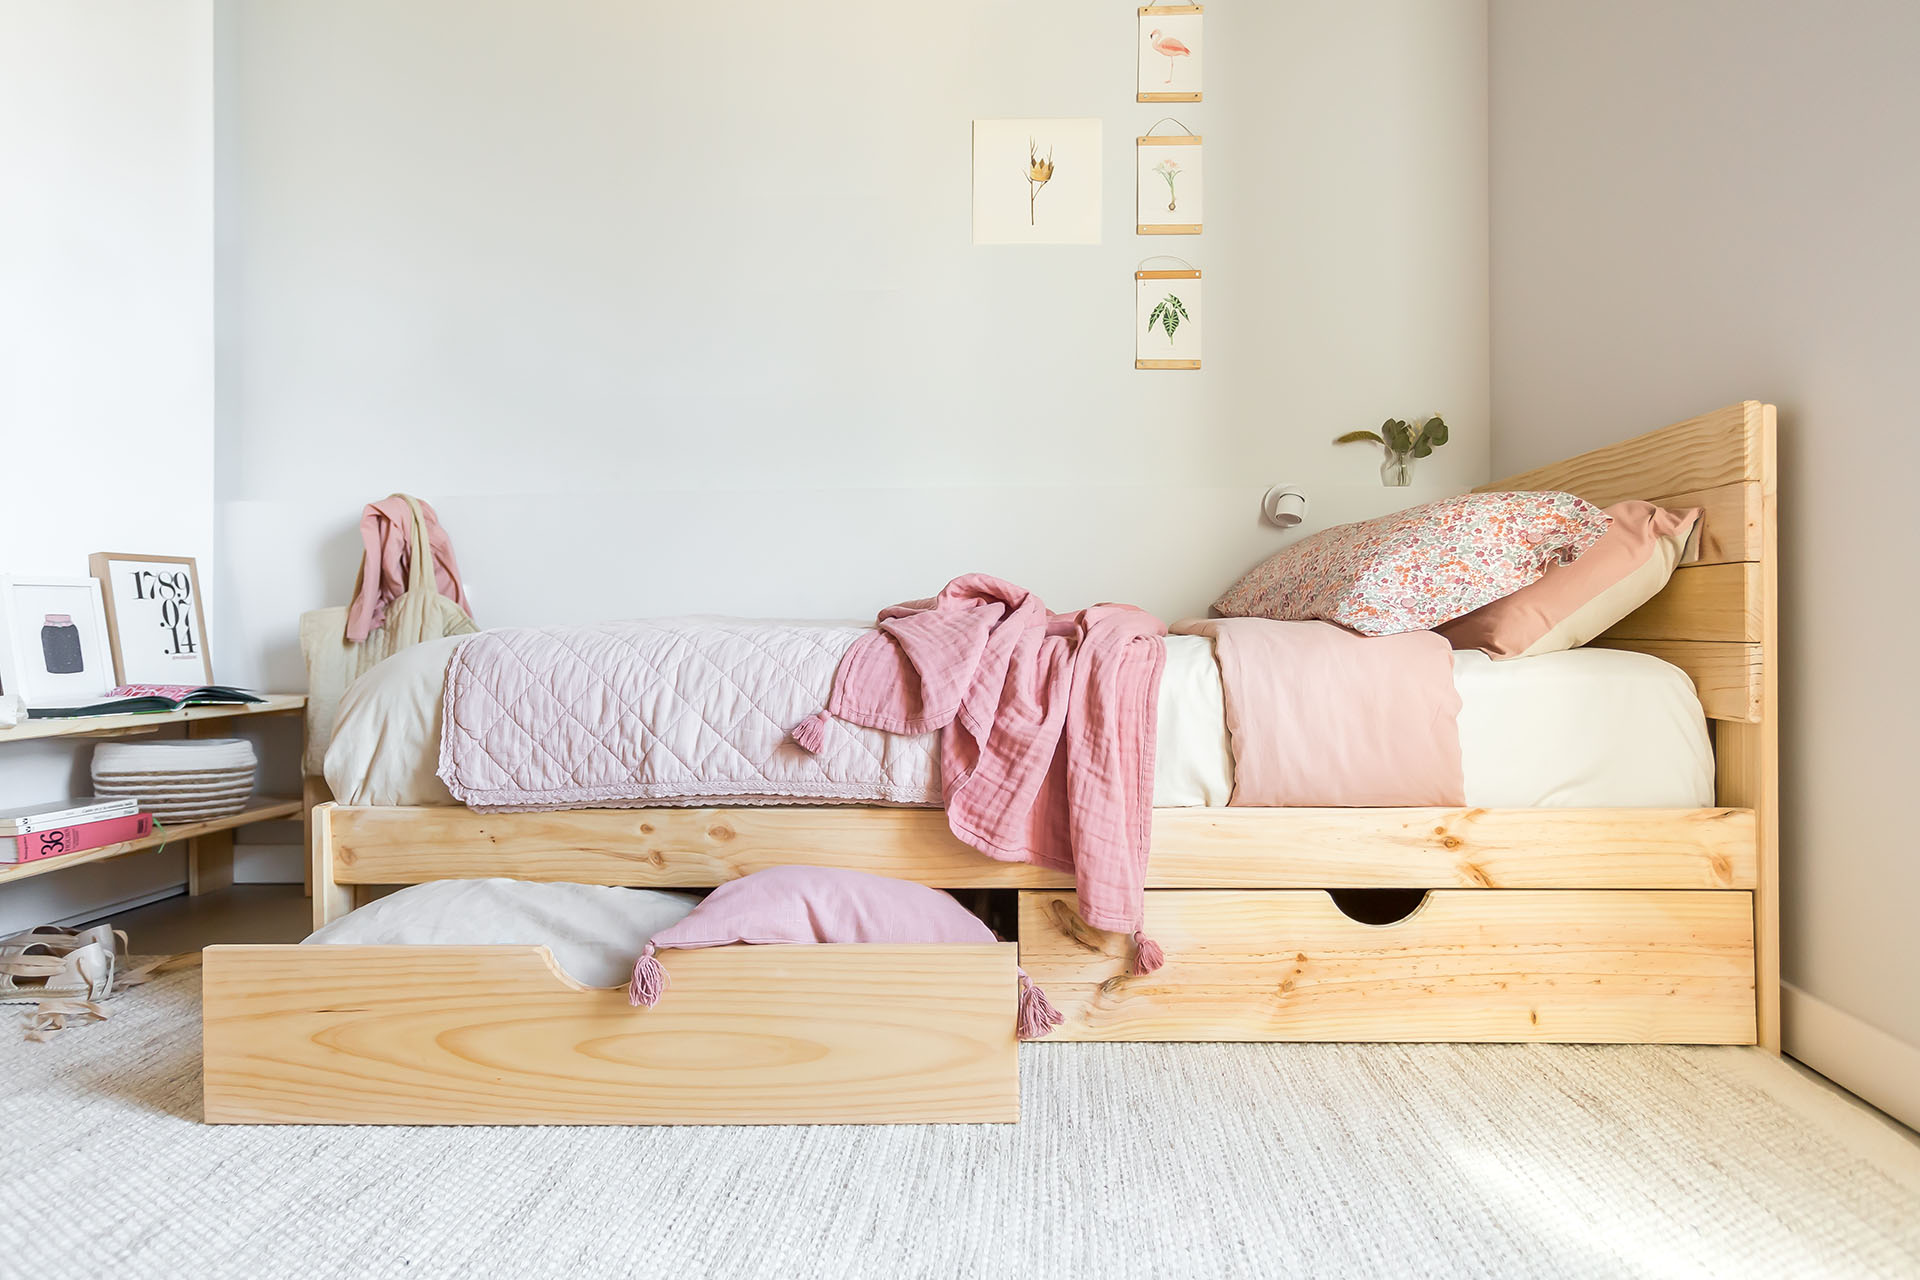 satisfacción hormigón Conciso Redecorar la habitación de los niños es sencillo, cómodo y muy barato. |  Muebles LUFE